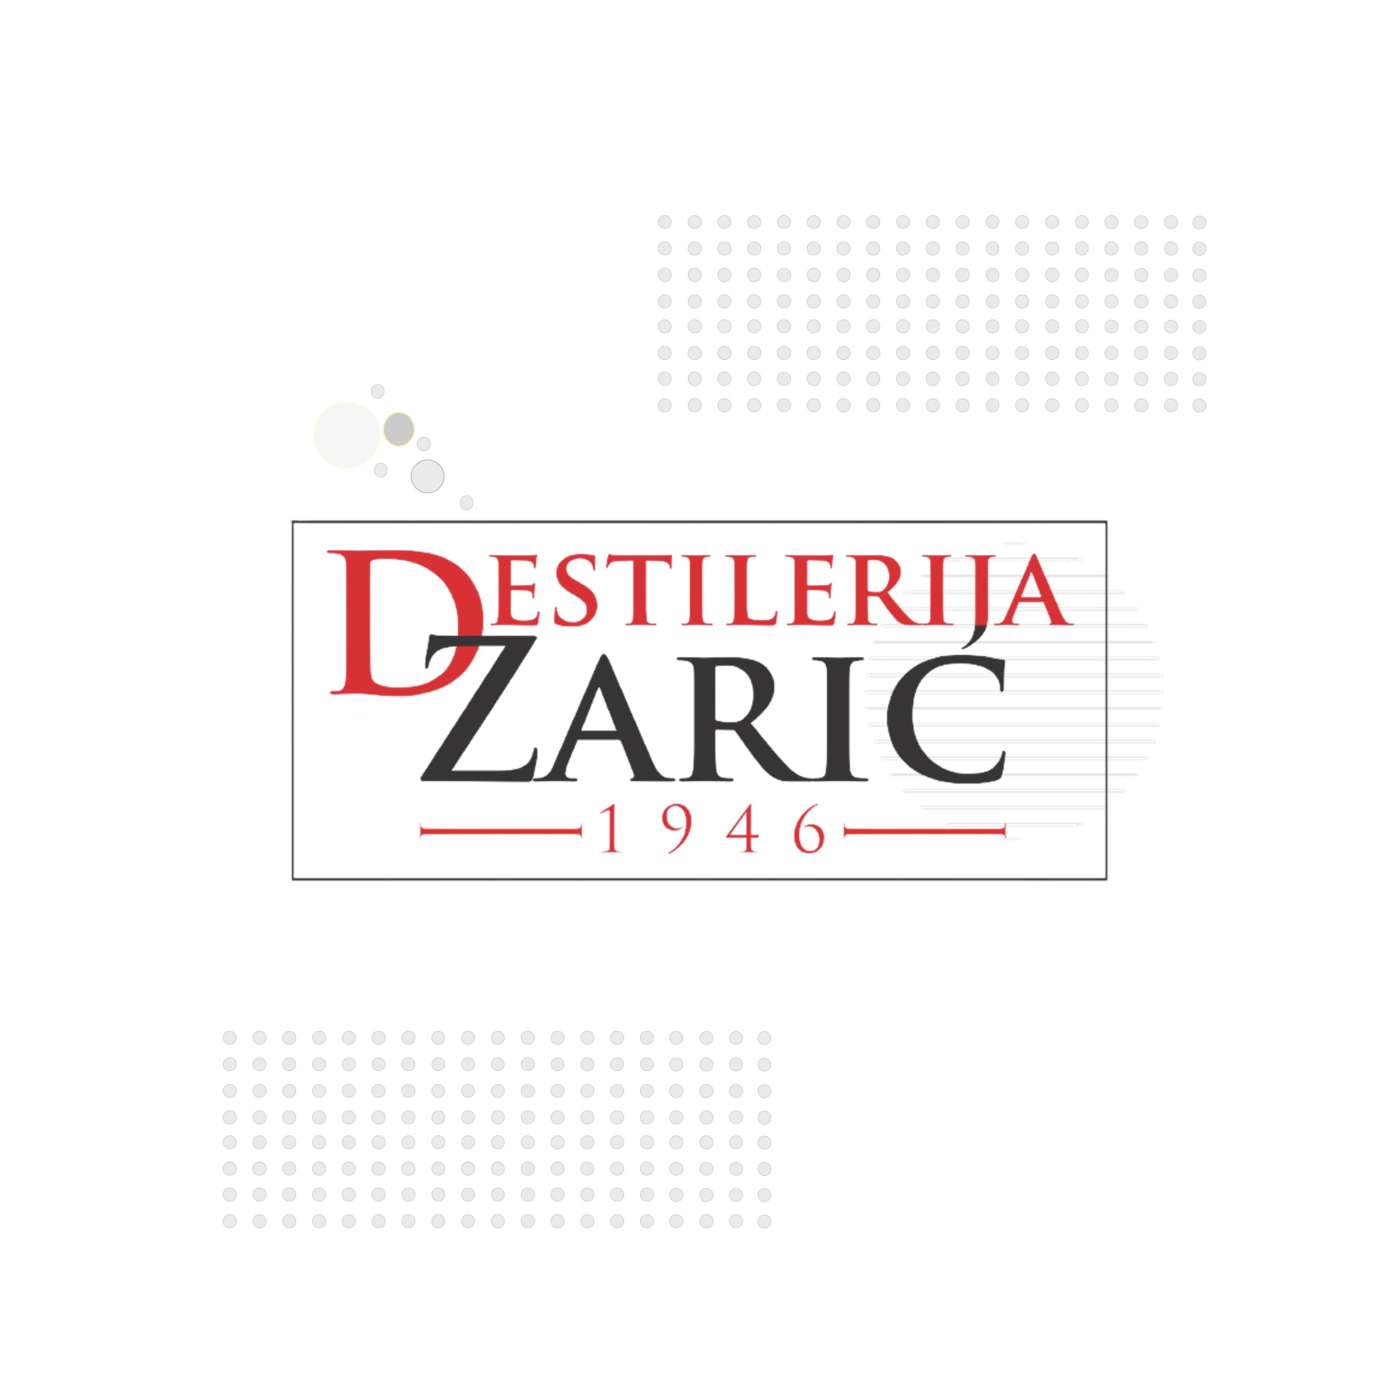 Destilerija Zarić